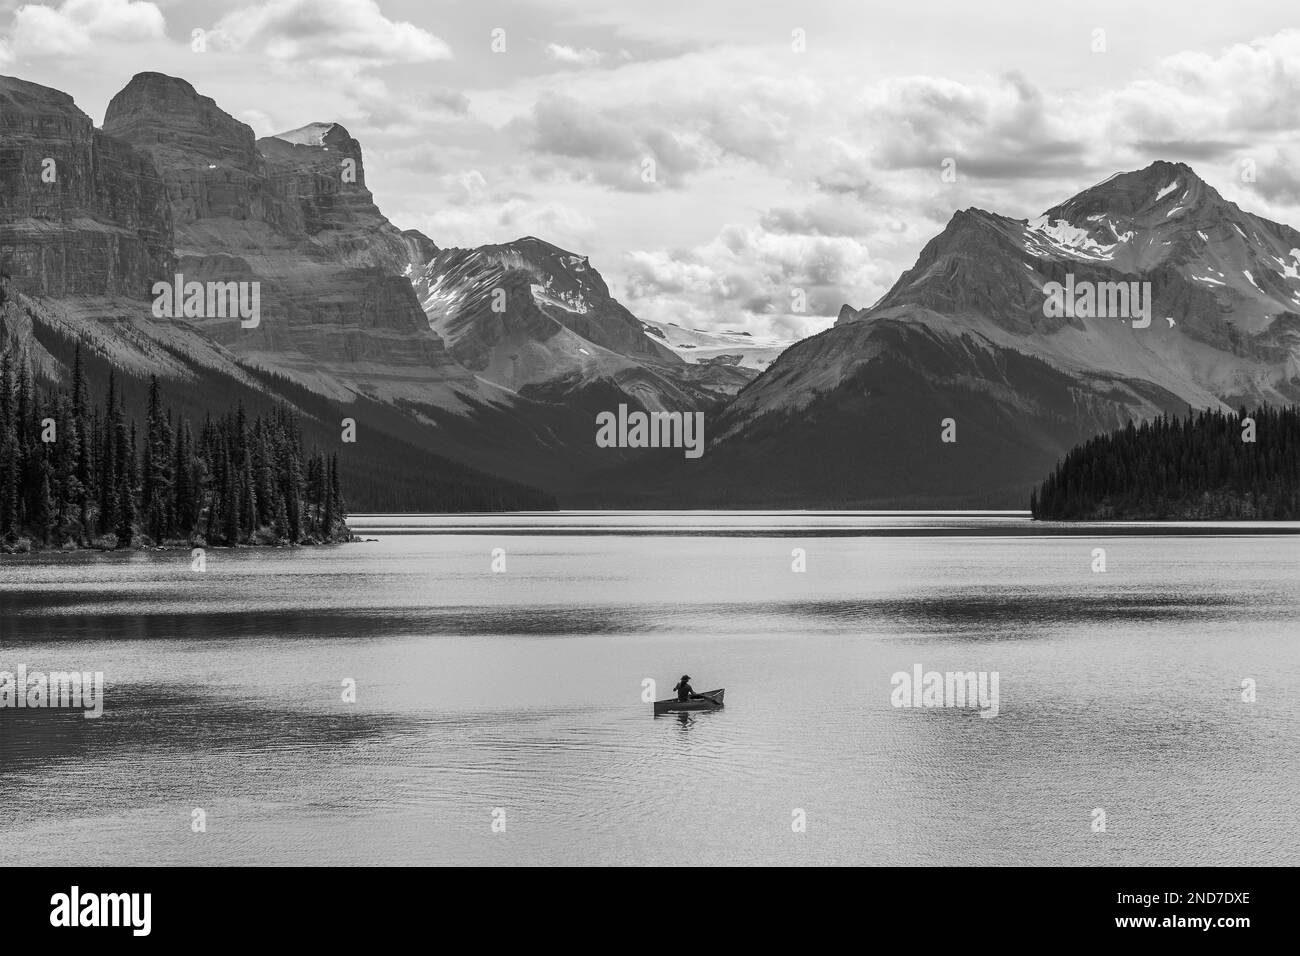 Aventurier solitaire lors d'une excursion en canoë noir et blanc sur le lac Maligne, les Rocheuses canadiennes, le parc national Jasper, Alberta, Canada. Banque D'Images